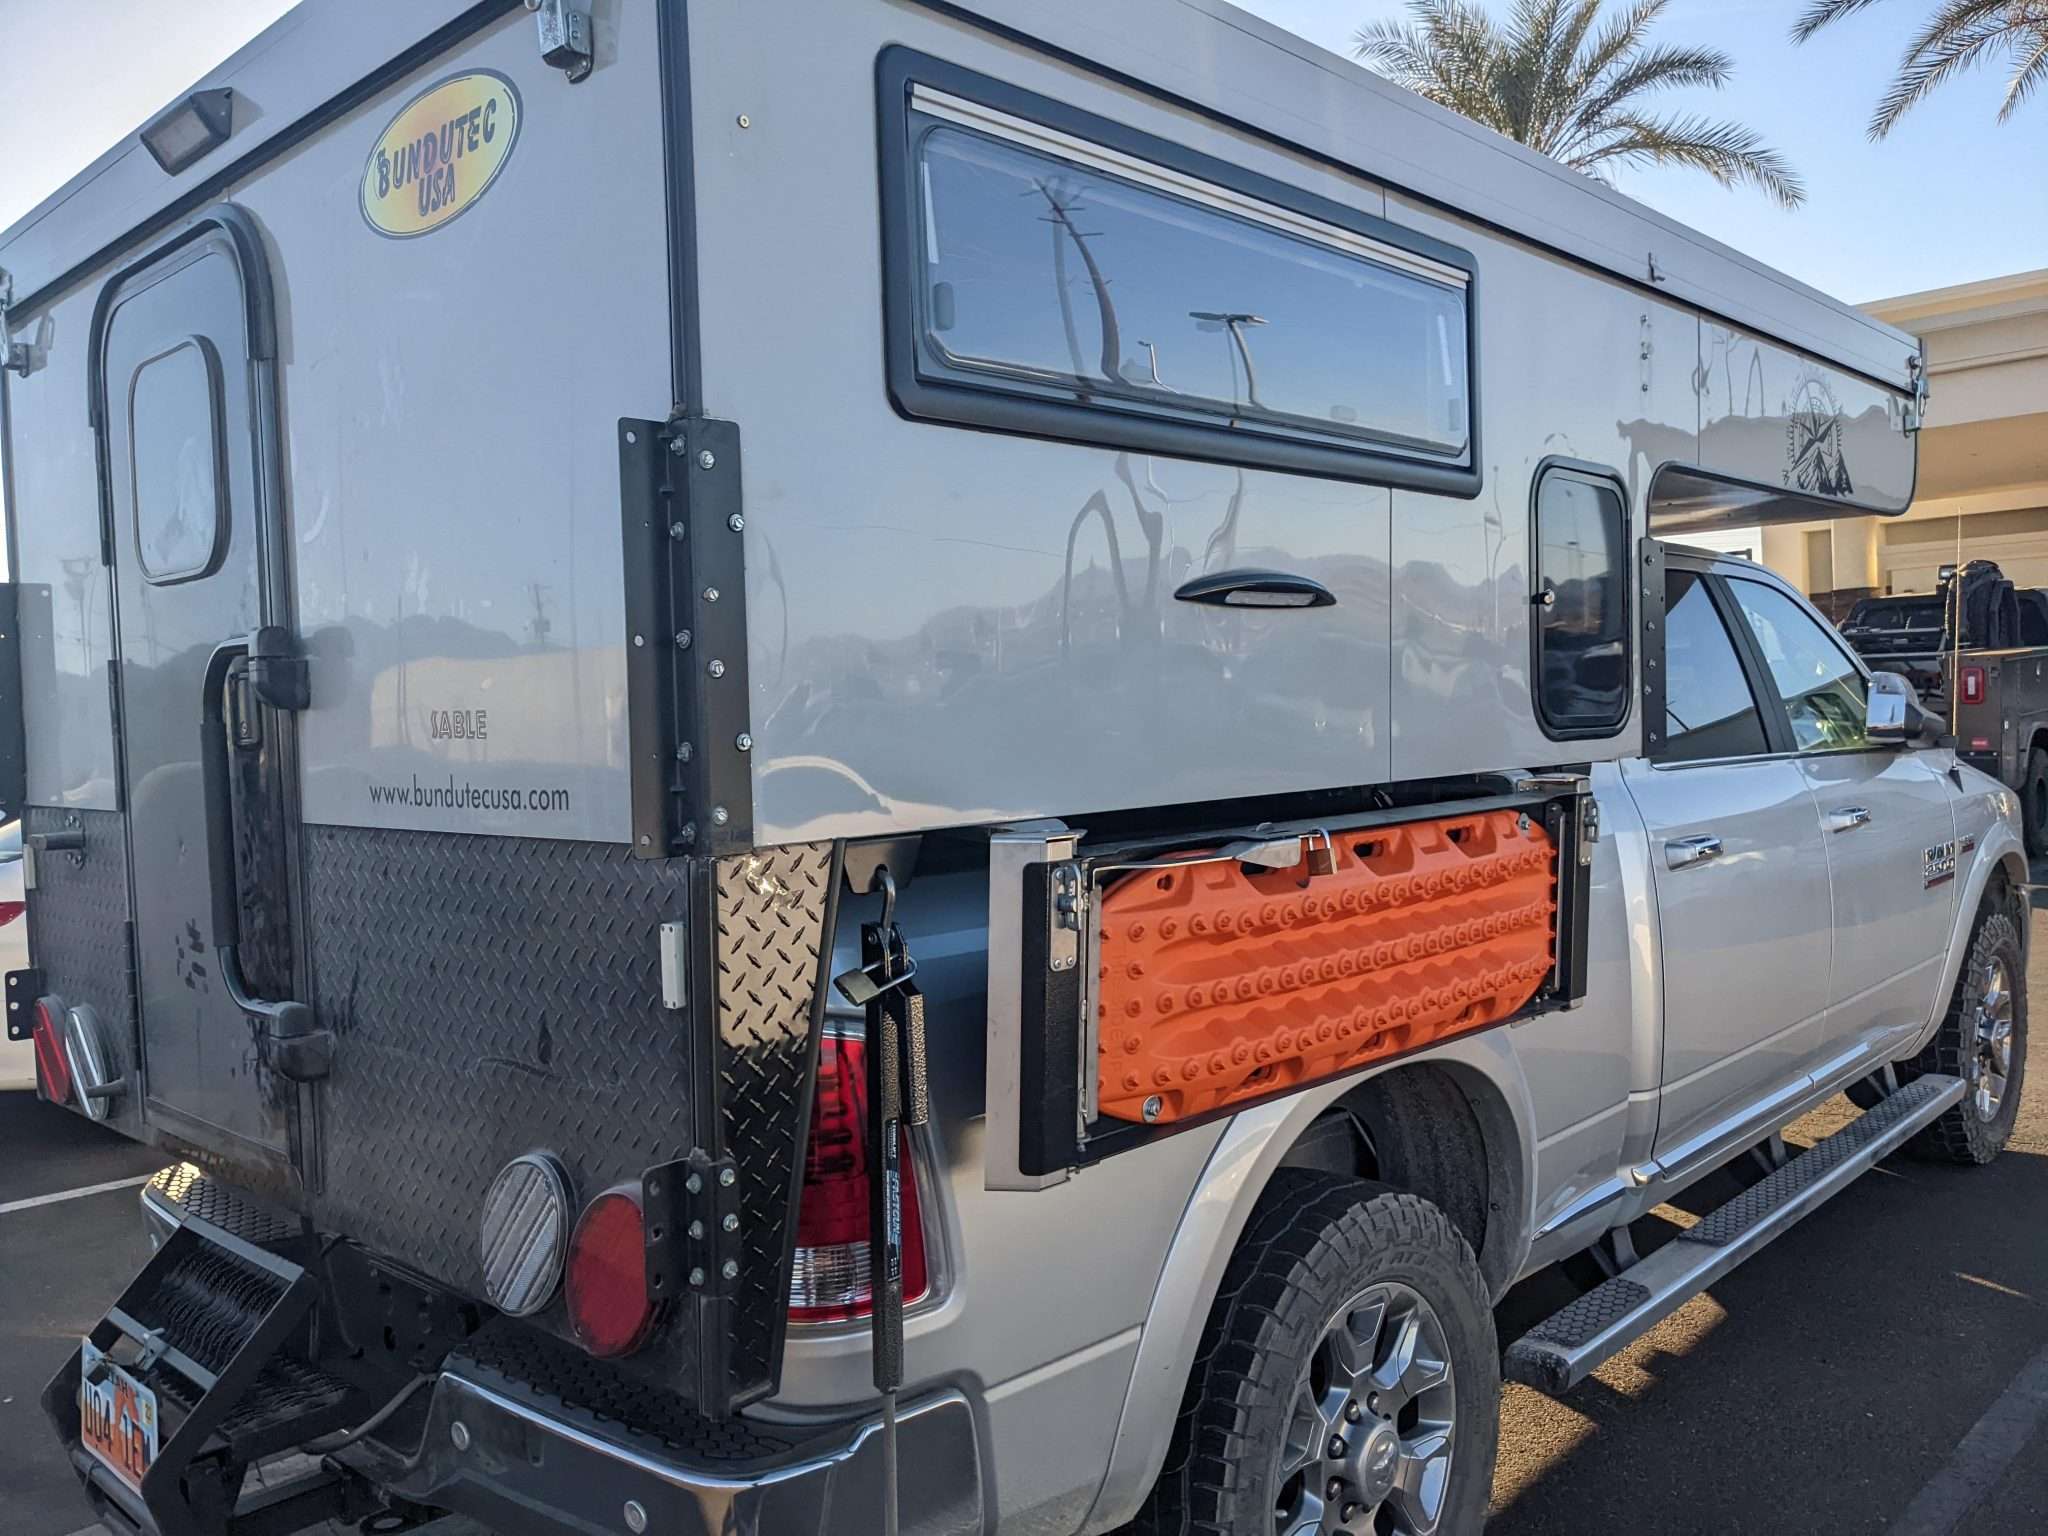 BundutecUSA truck camper